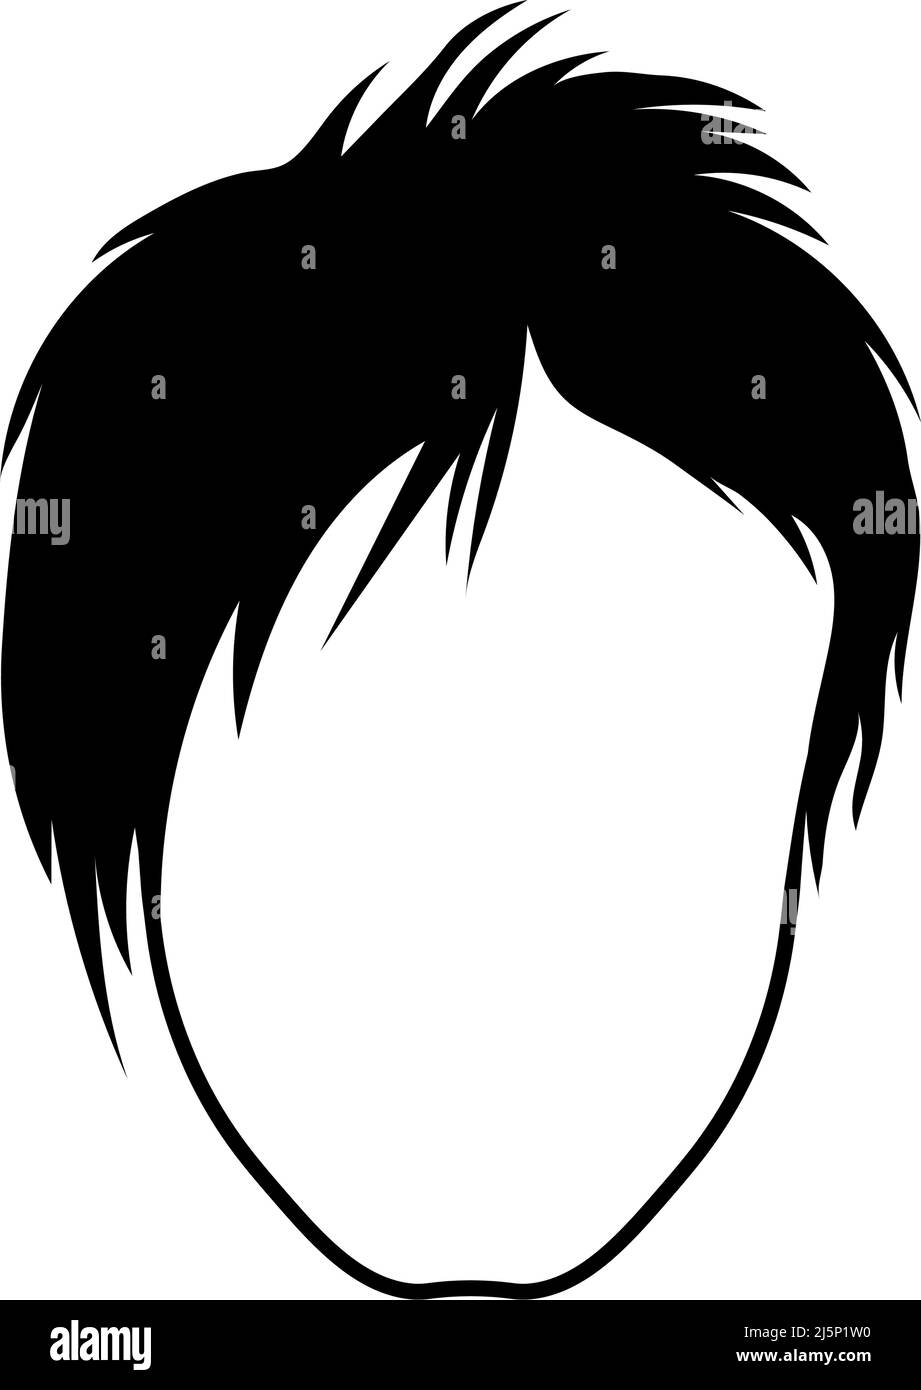 Boy hair icon design template ilustration vector Stock Vector